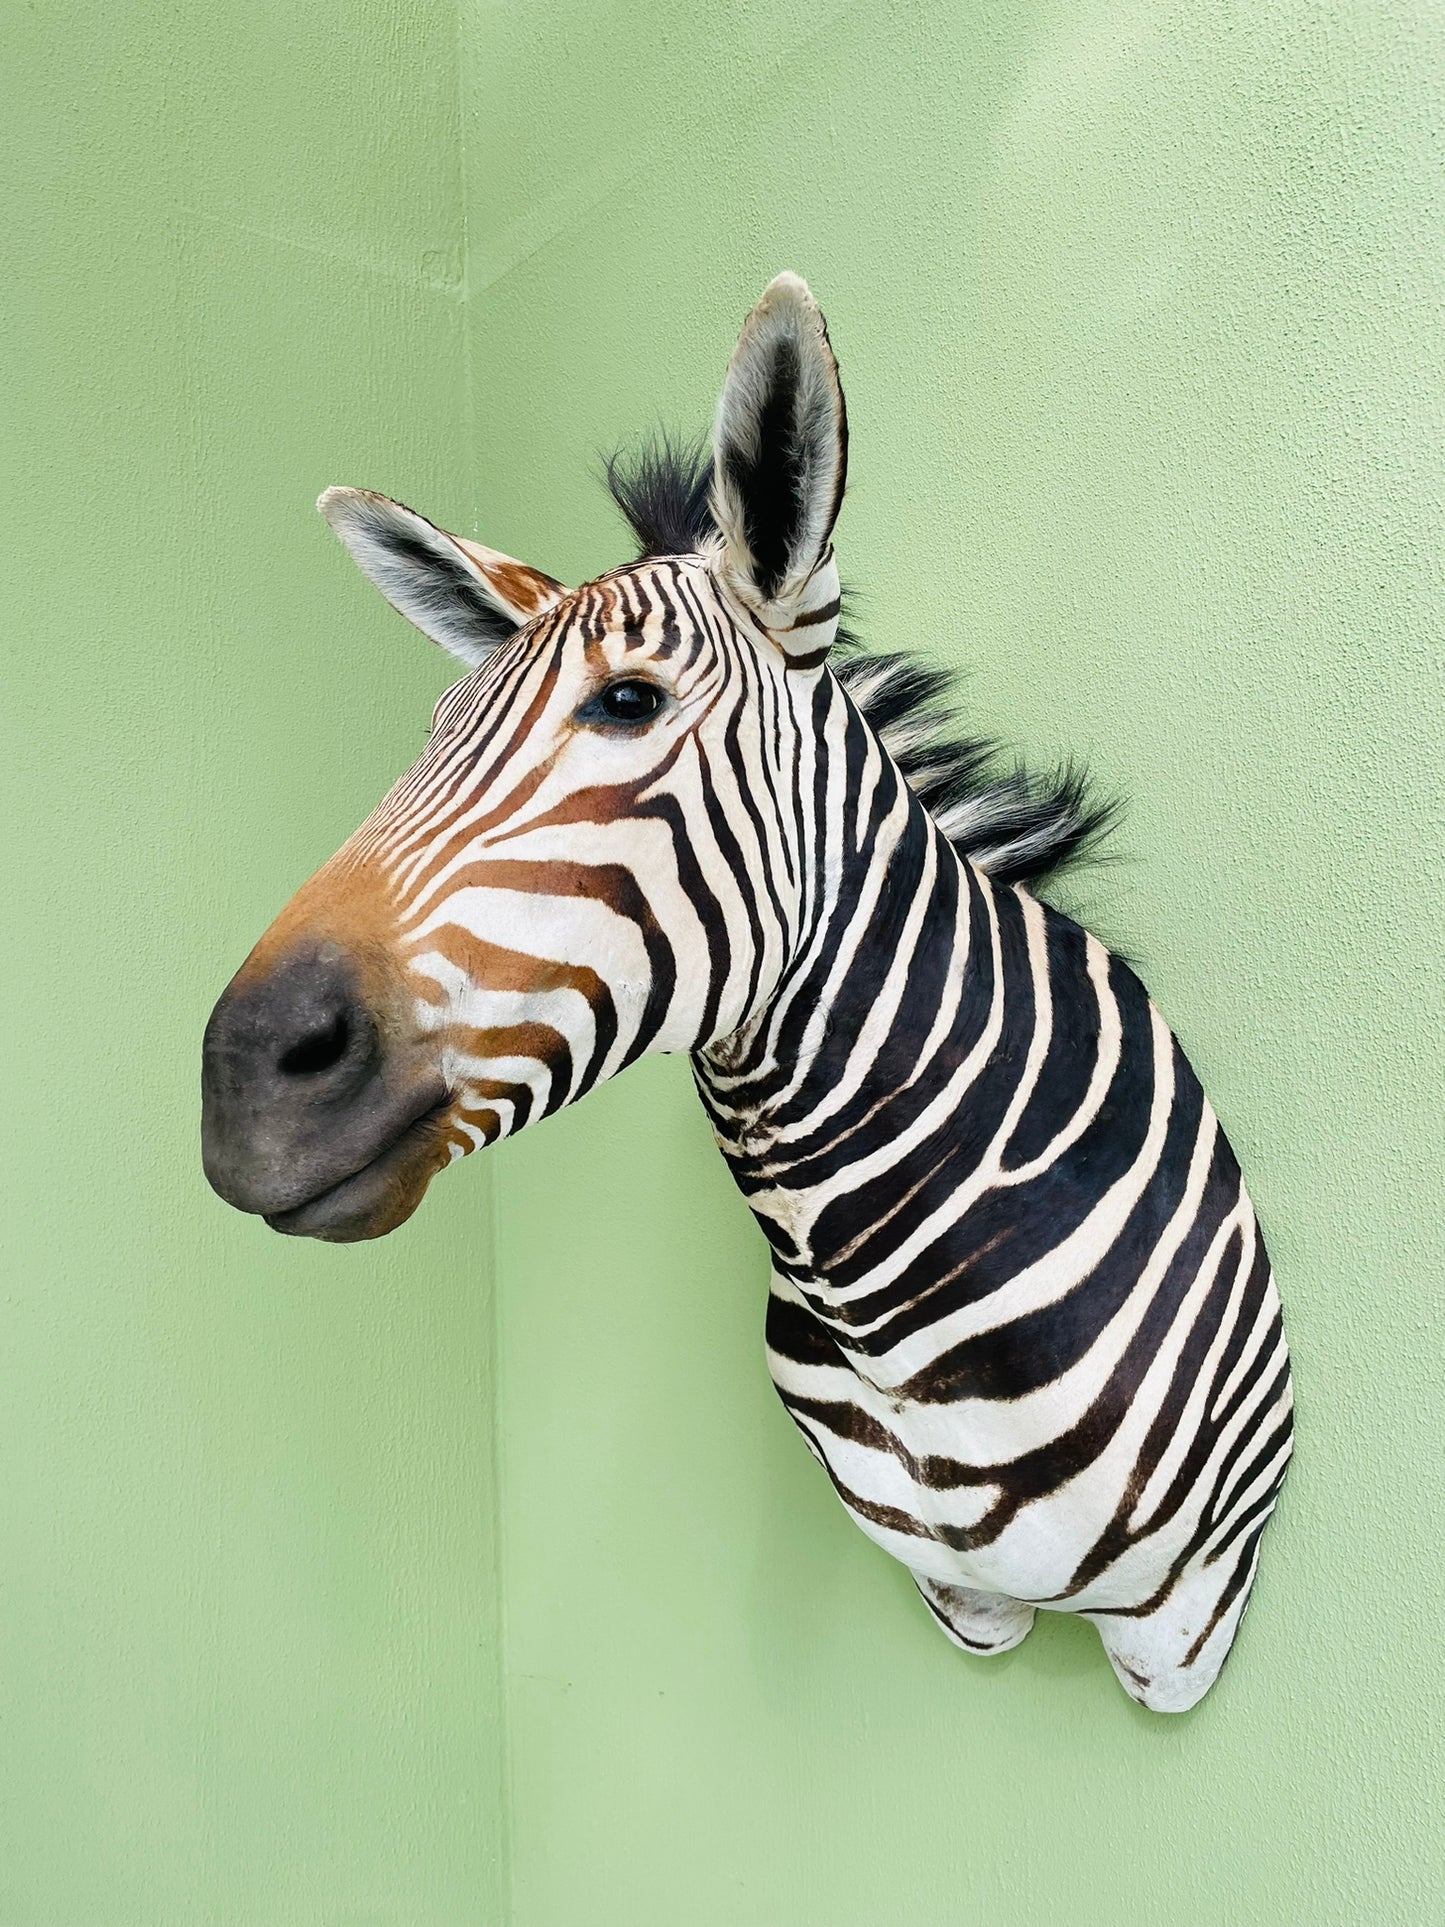 Giant taxidermy zebra head